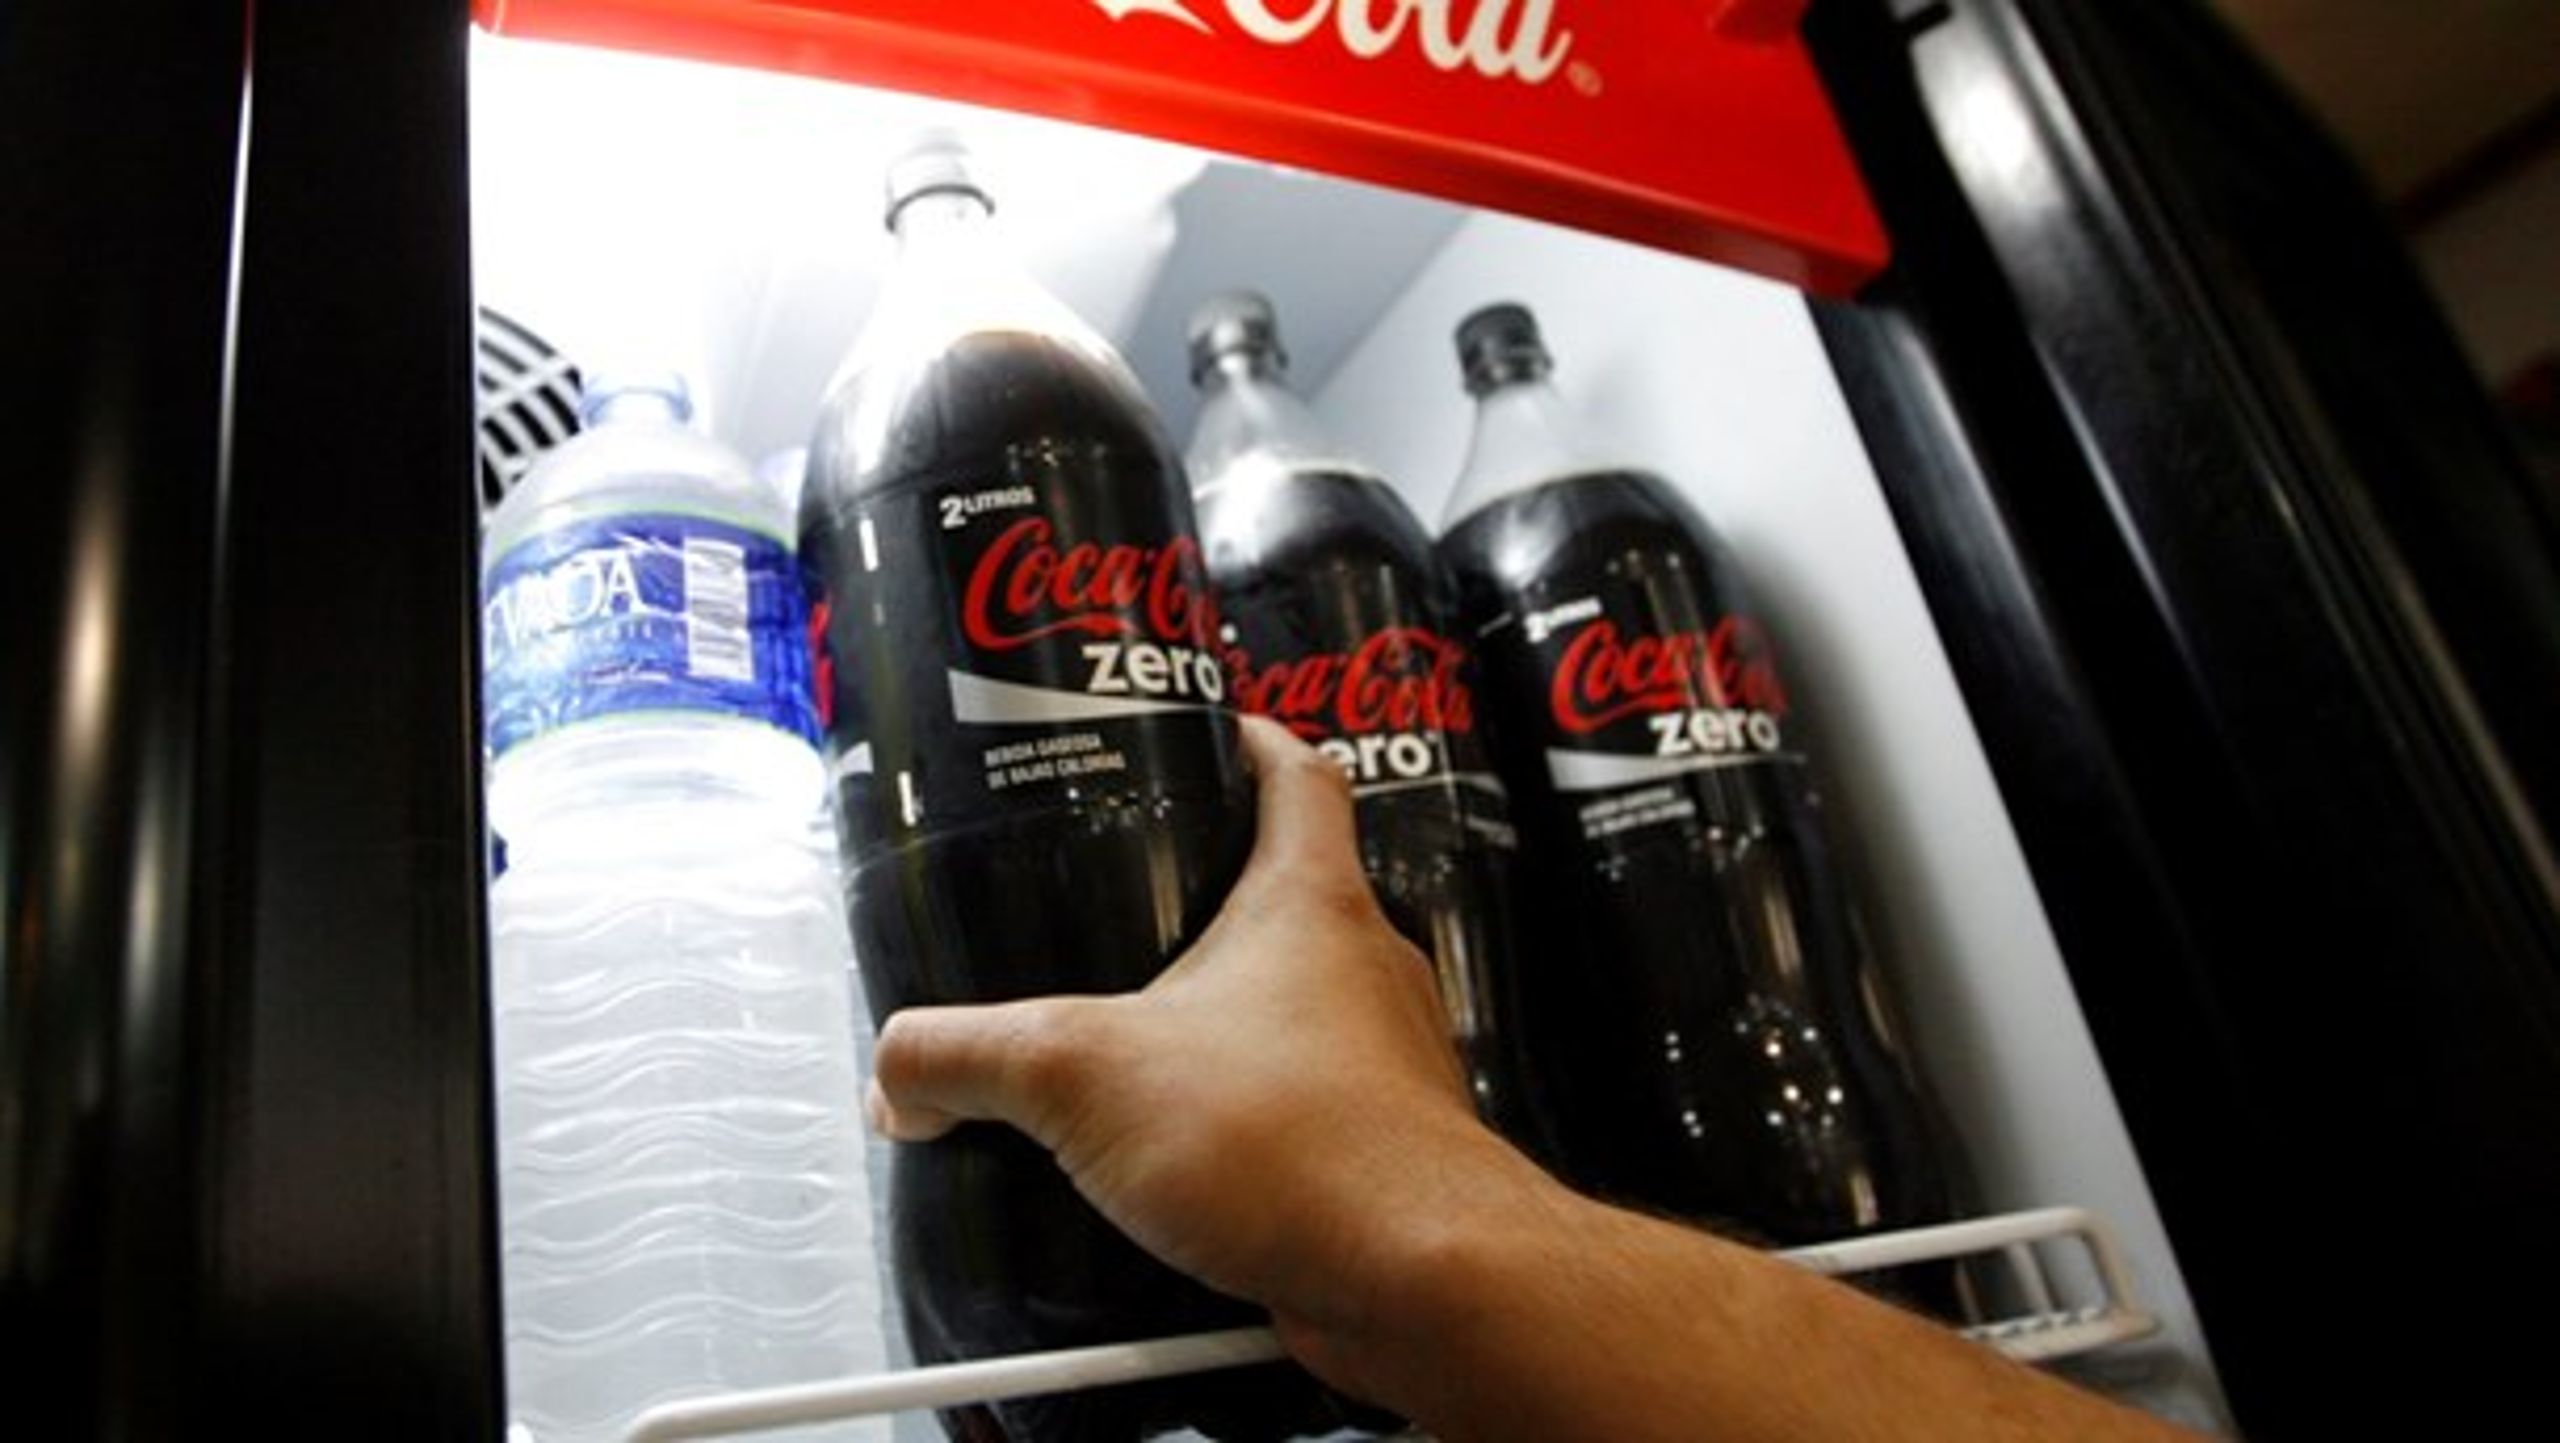 Coca-Cola Zero er et af de produkter, Reddigselv.dk benævner som decideret livstruende, fordi det indeholder aspartam. Men de to forskere, TjekDet har talt med, kan ikke genkende billedet.